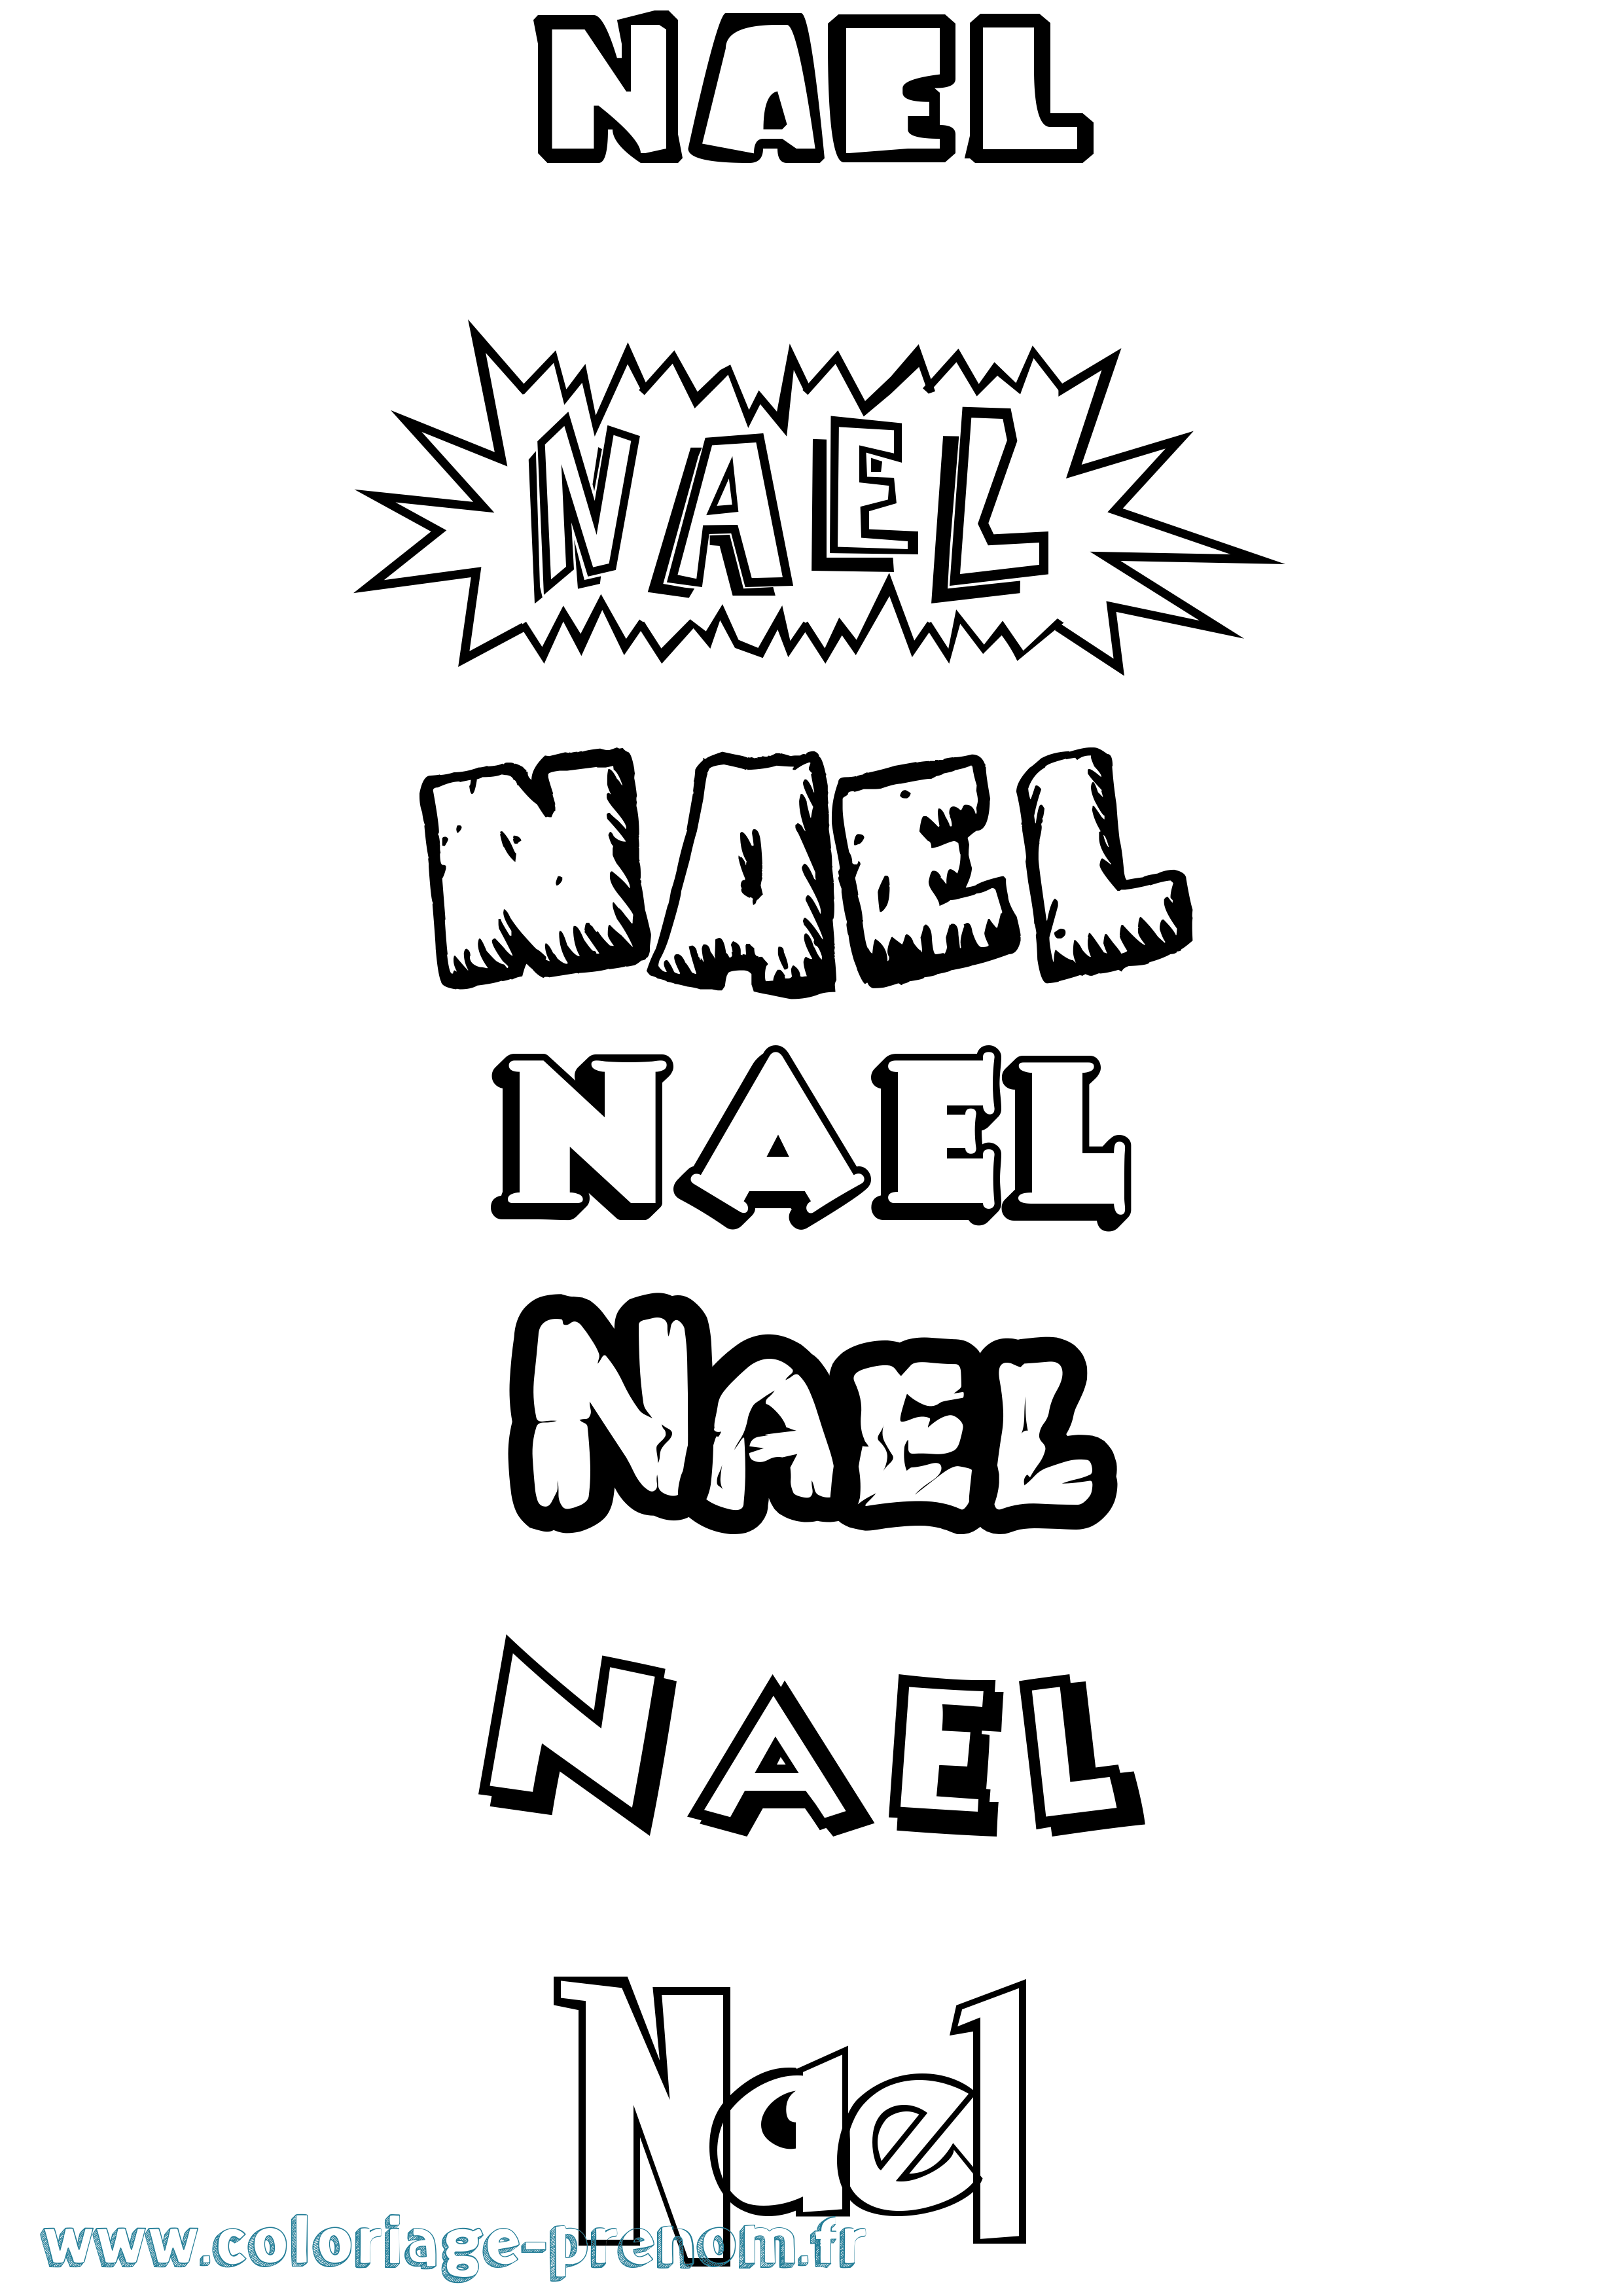 Coloriage prénom Nael